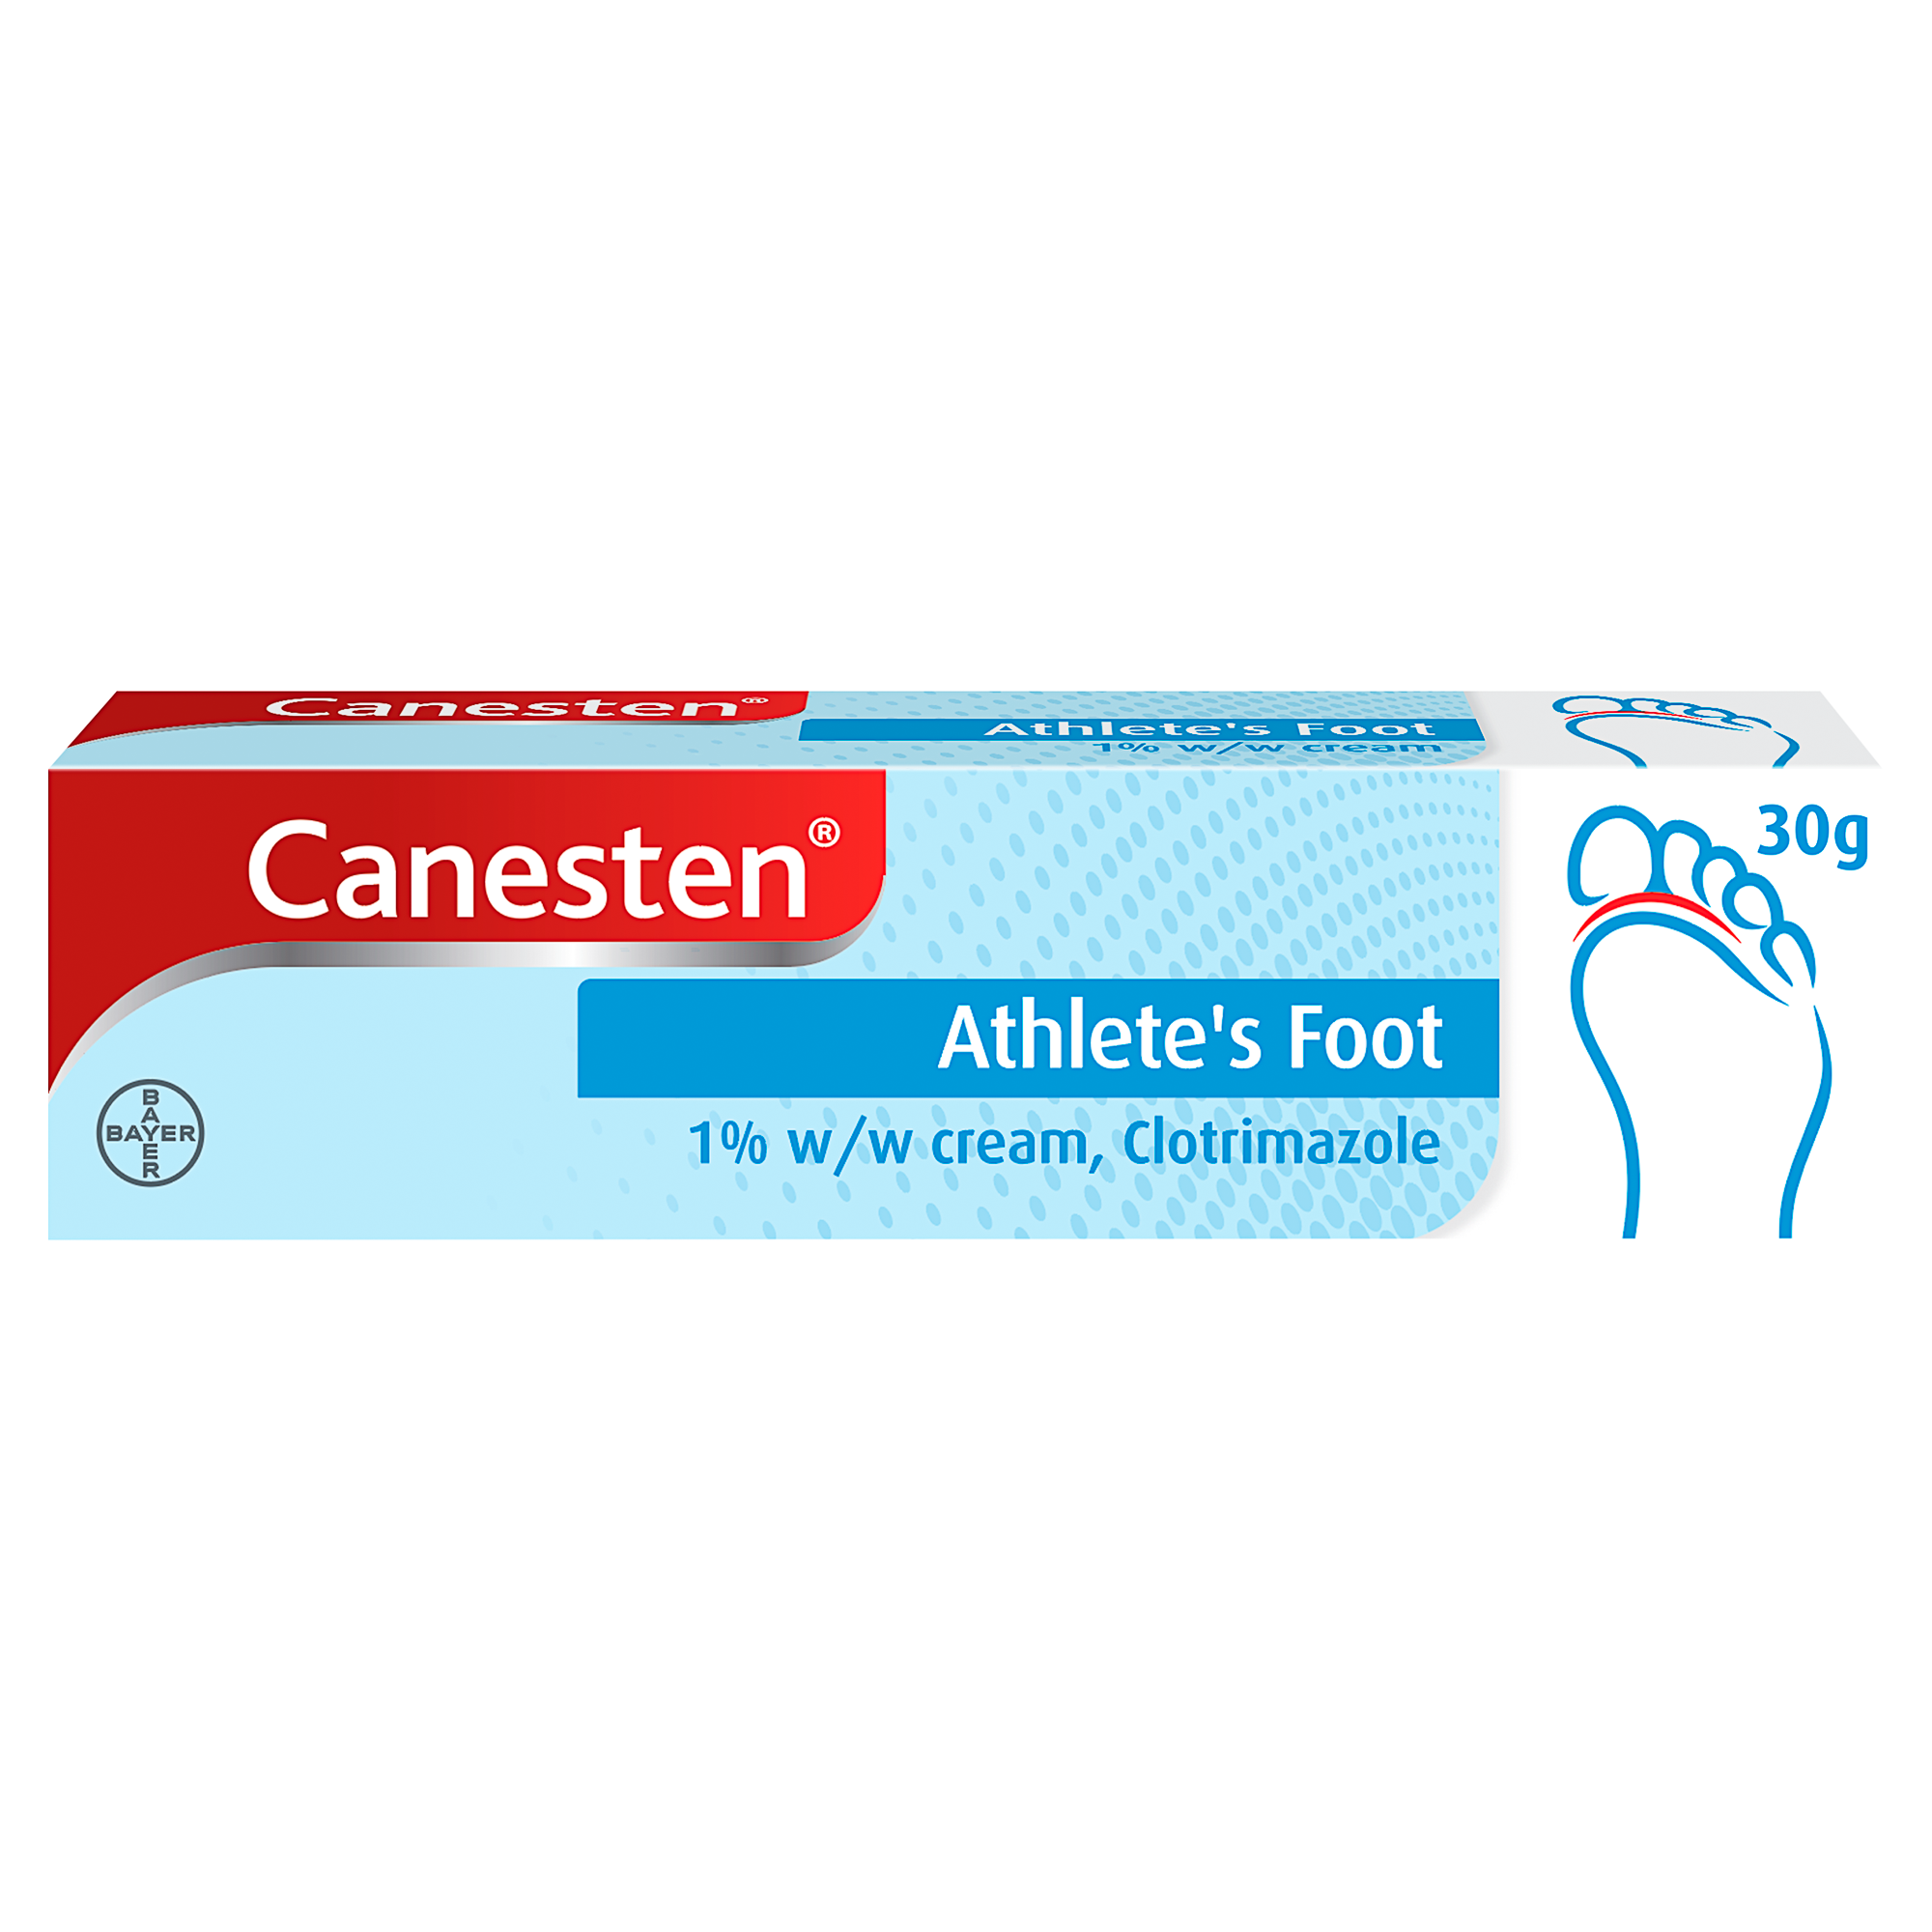 Canesten Athlete’s Foot 1% w/w Cream